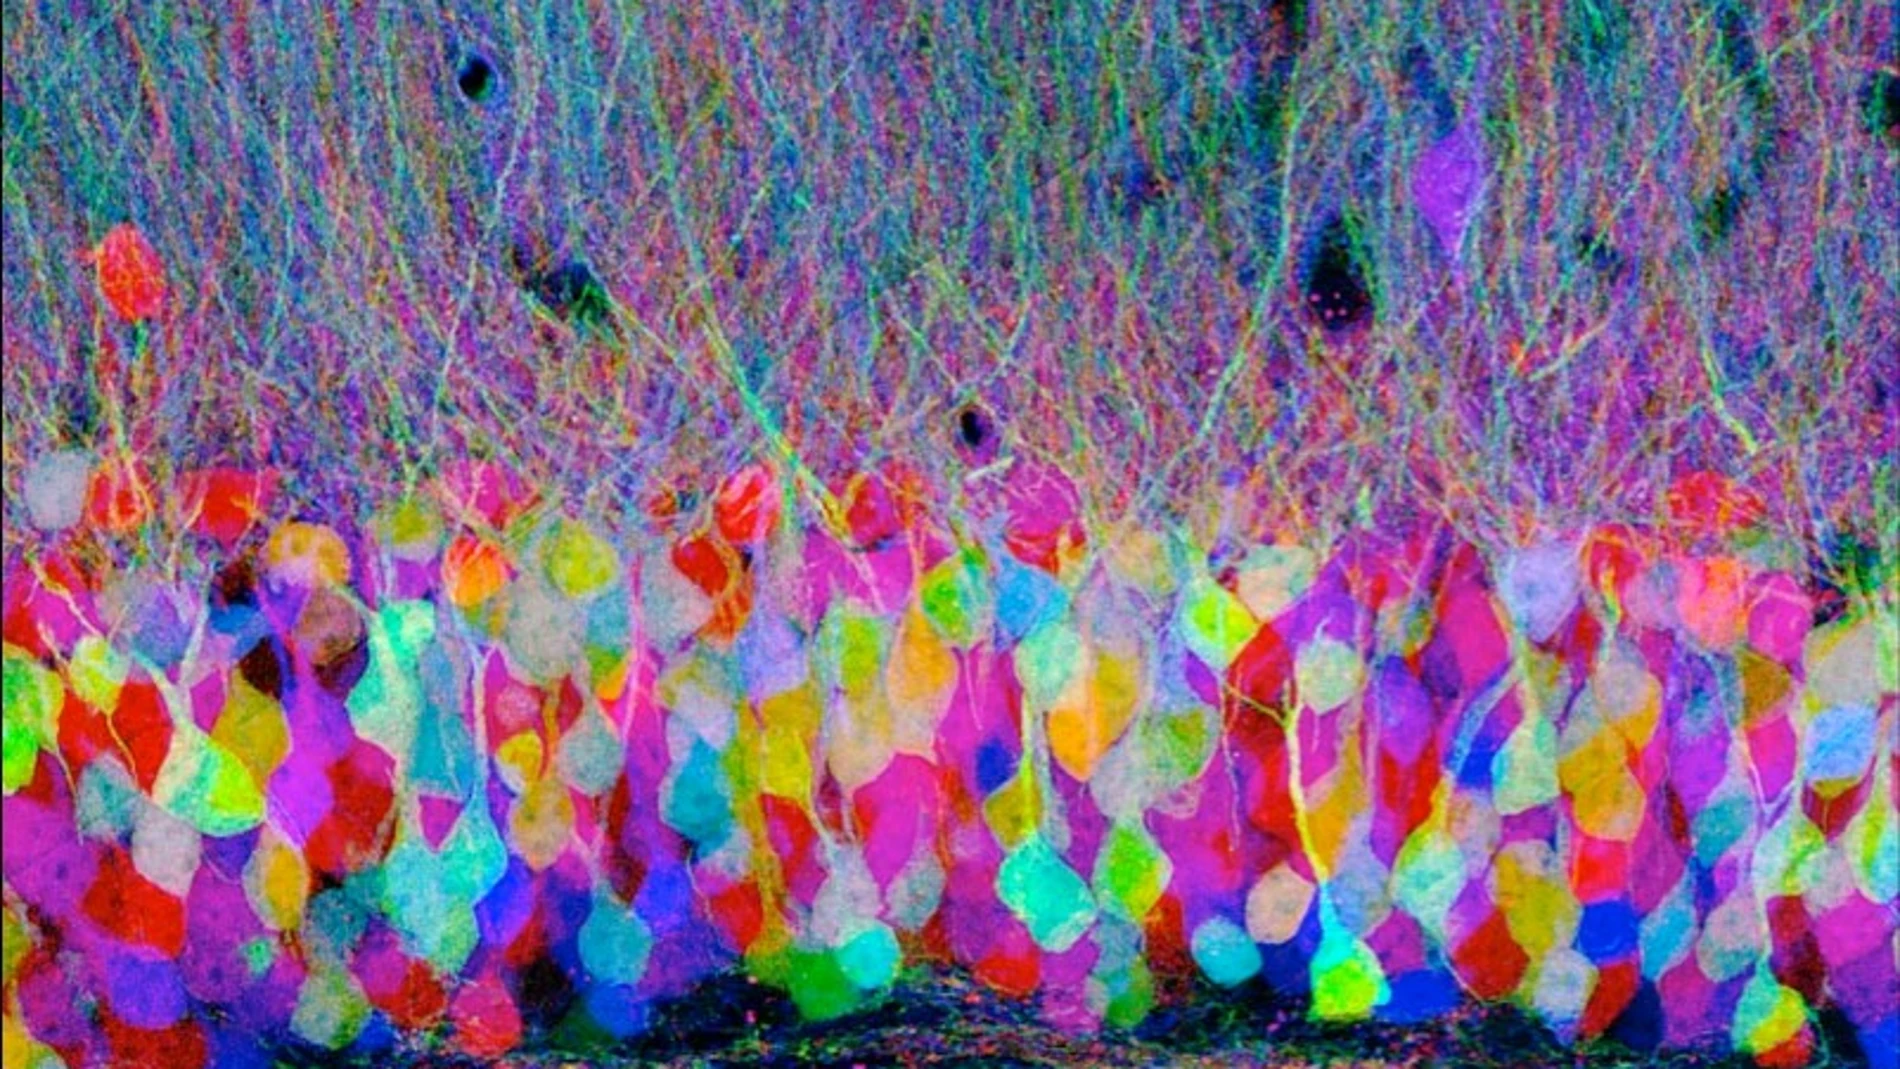 Corte histológico de un cerebro mostrando las distintas neuronas con tinciones inmunofluorescentes en lo que se conoce como brainbow. No es una imagen relacionada con este estudio.